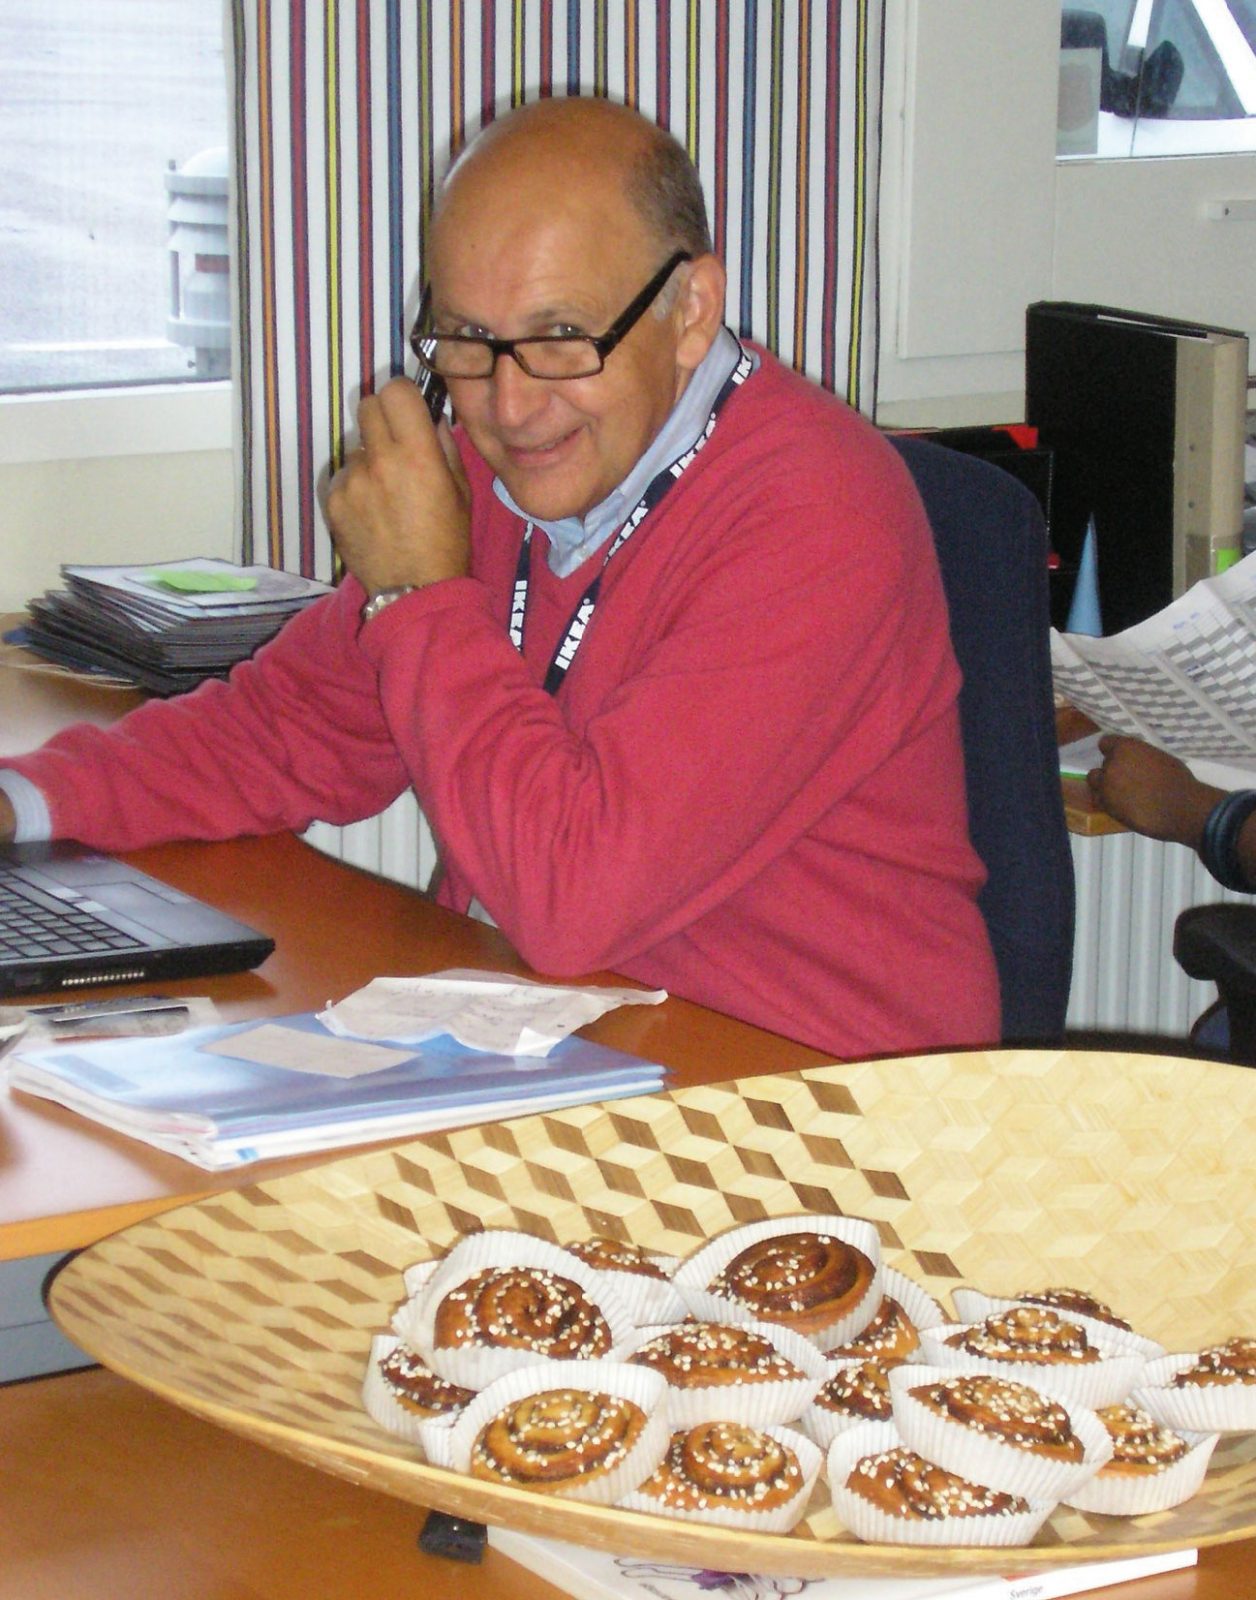 Homme avec lunettes et pull rouge, Mats, Agmén, au téléphone à son bureau. Devant, panier avec petits pains à la cannelle.